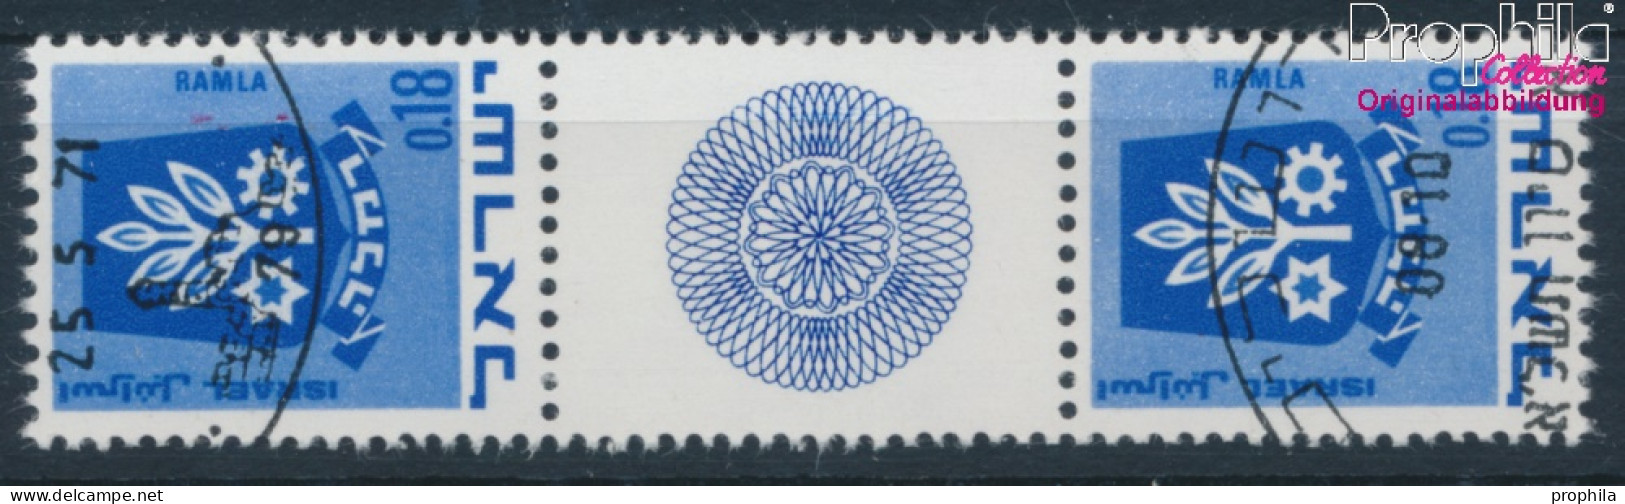 Israel 486/486 ZS Zwischenstegpaar (kompl.Ausg.) Gestempelt 1971 Wappen (10252329 - Gebraucht (ohne Tabs)